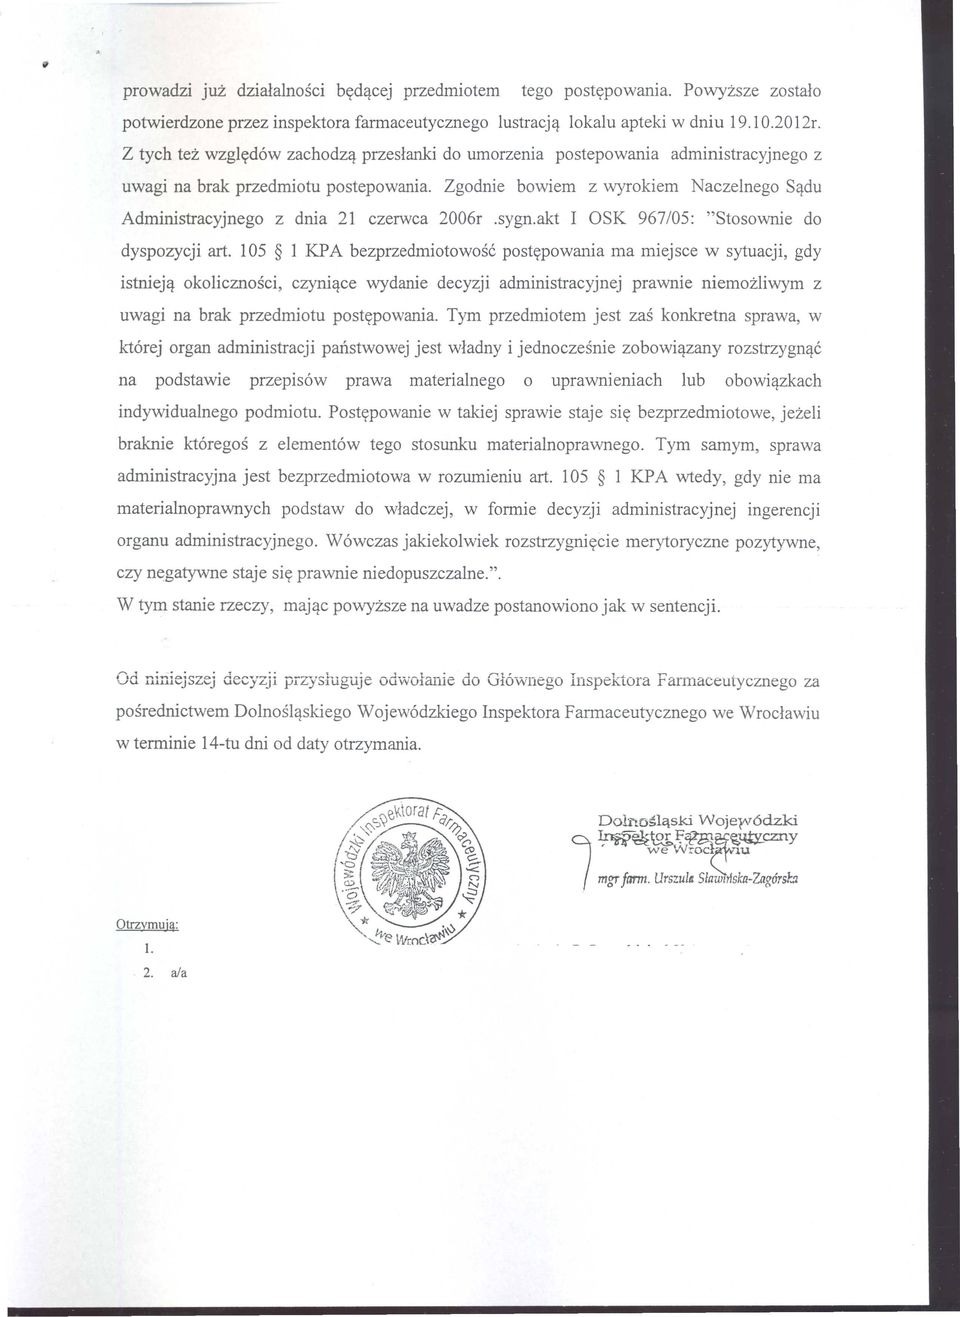 Zgodnie bowiem z wyrokiem Naczelnego S~du Administracyjnego z dnia 21 czerwca 2006r.sygn.akt I ask 967/05: "Stosownie do dyspozycji art.